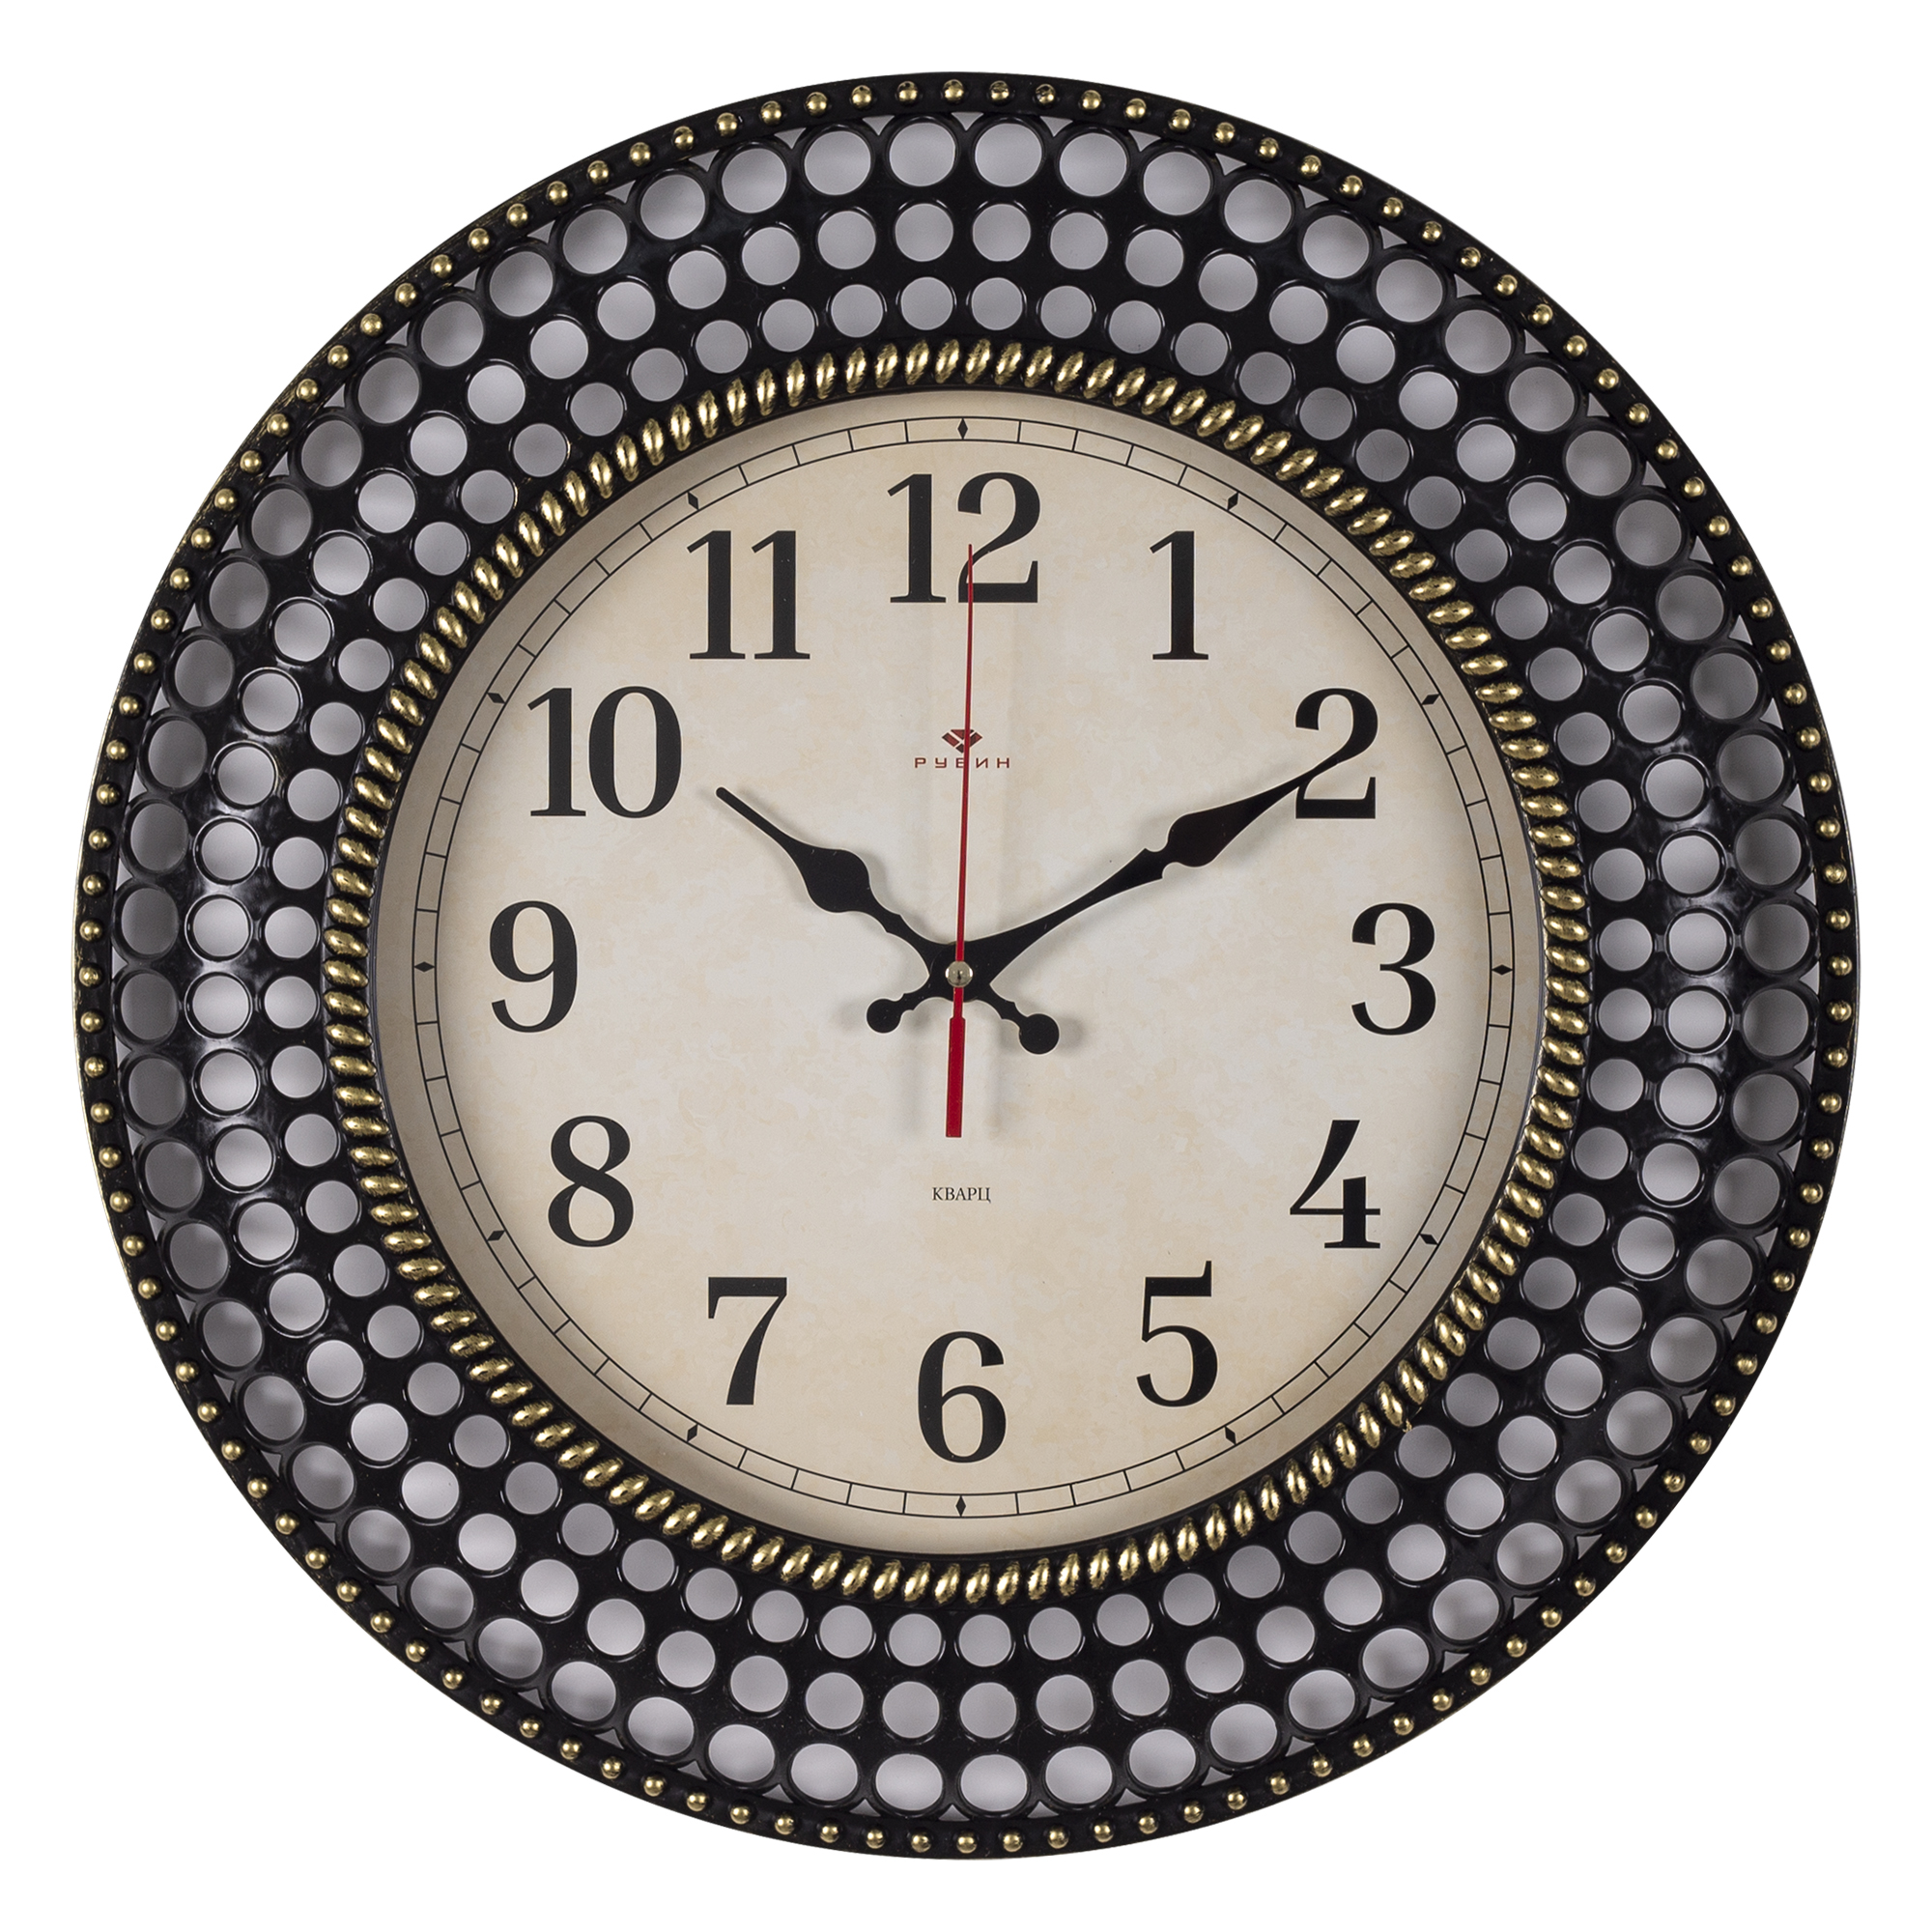 Часы настенные СН 4027 - 001 круг d=40 см, корпус чёрный с золотом "Классика"